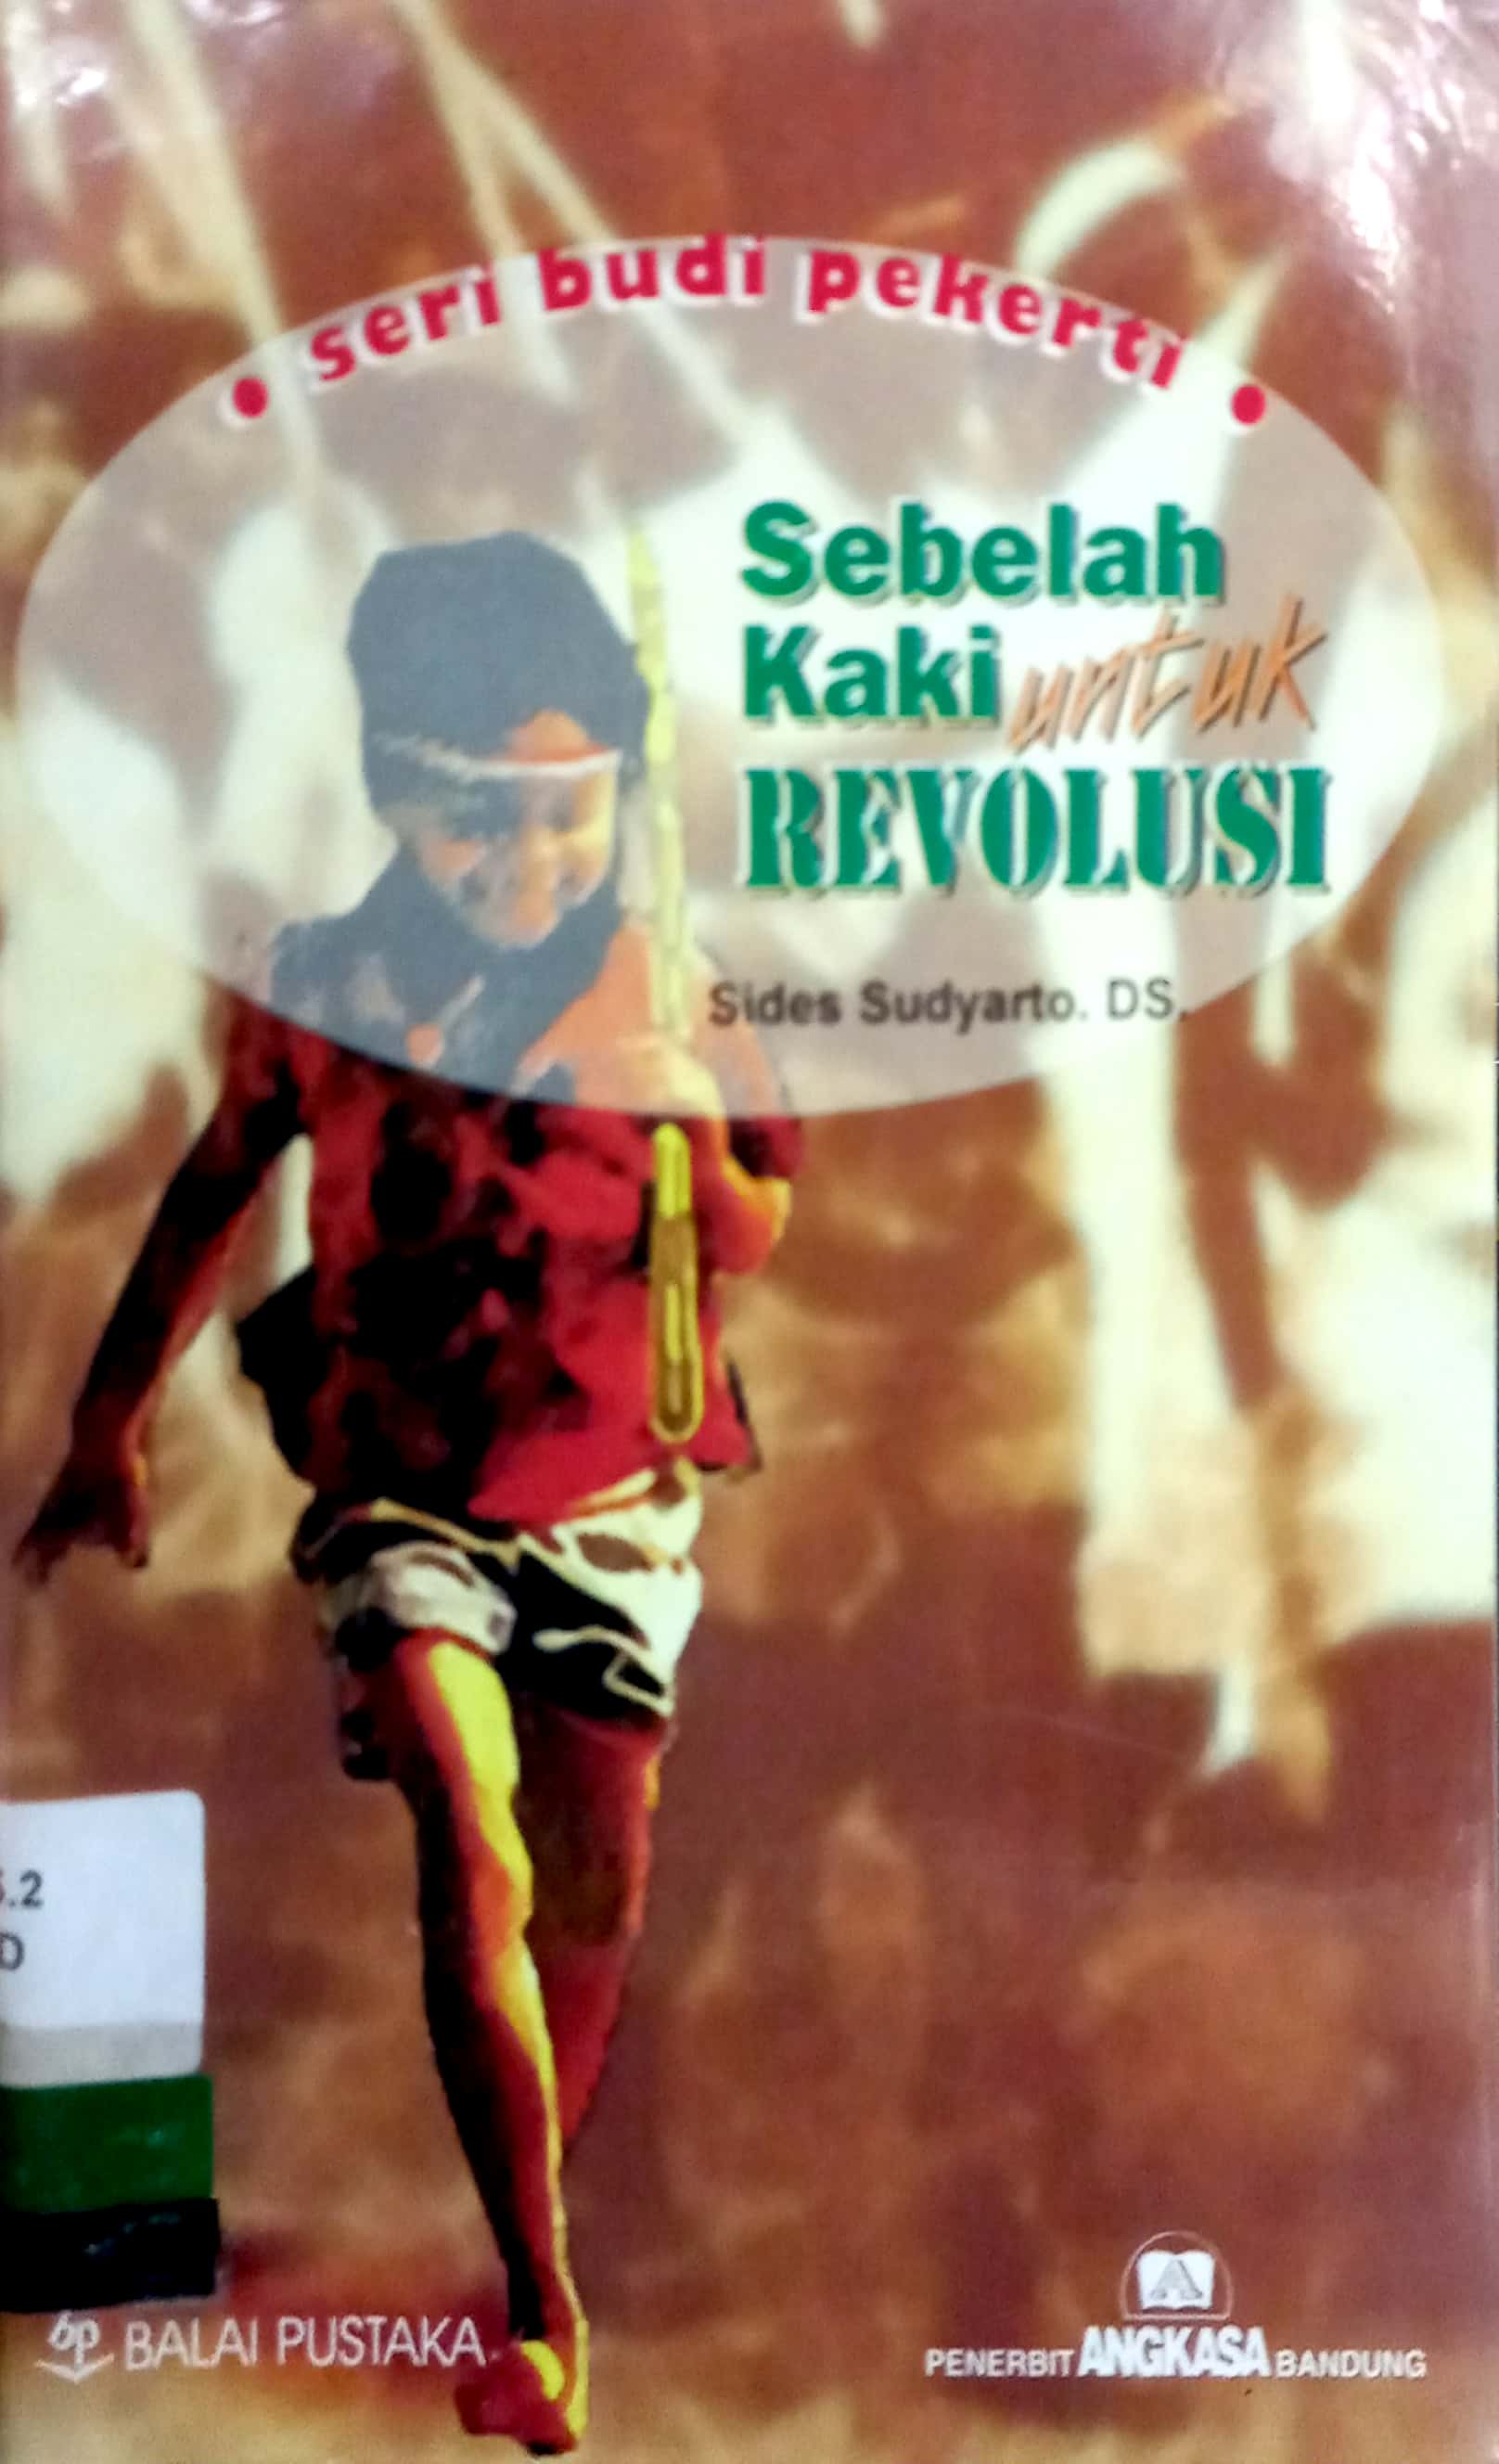 Sebelah kaki untuk revolusi